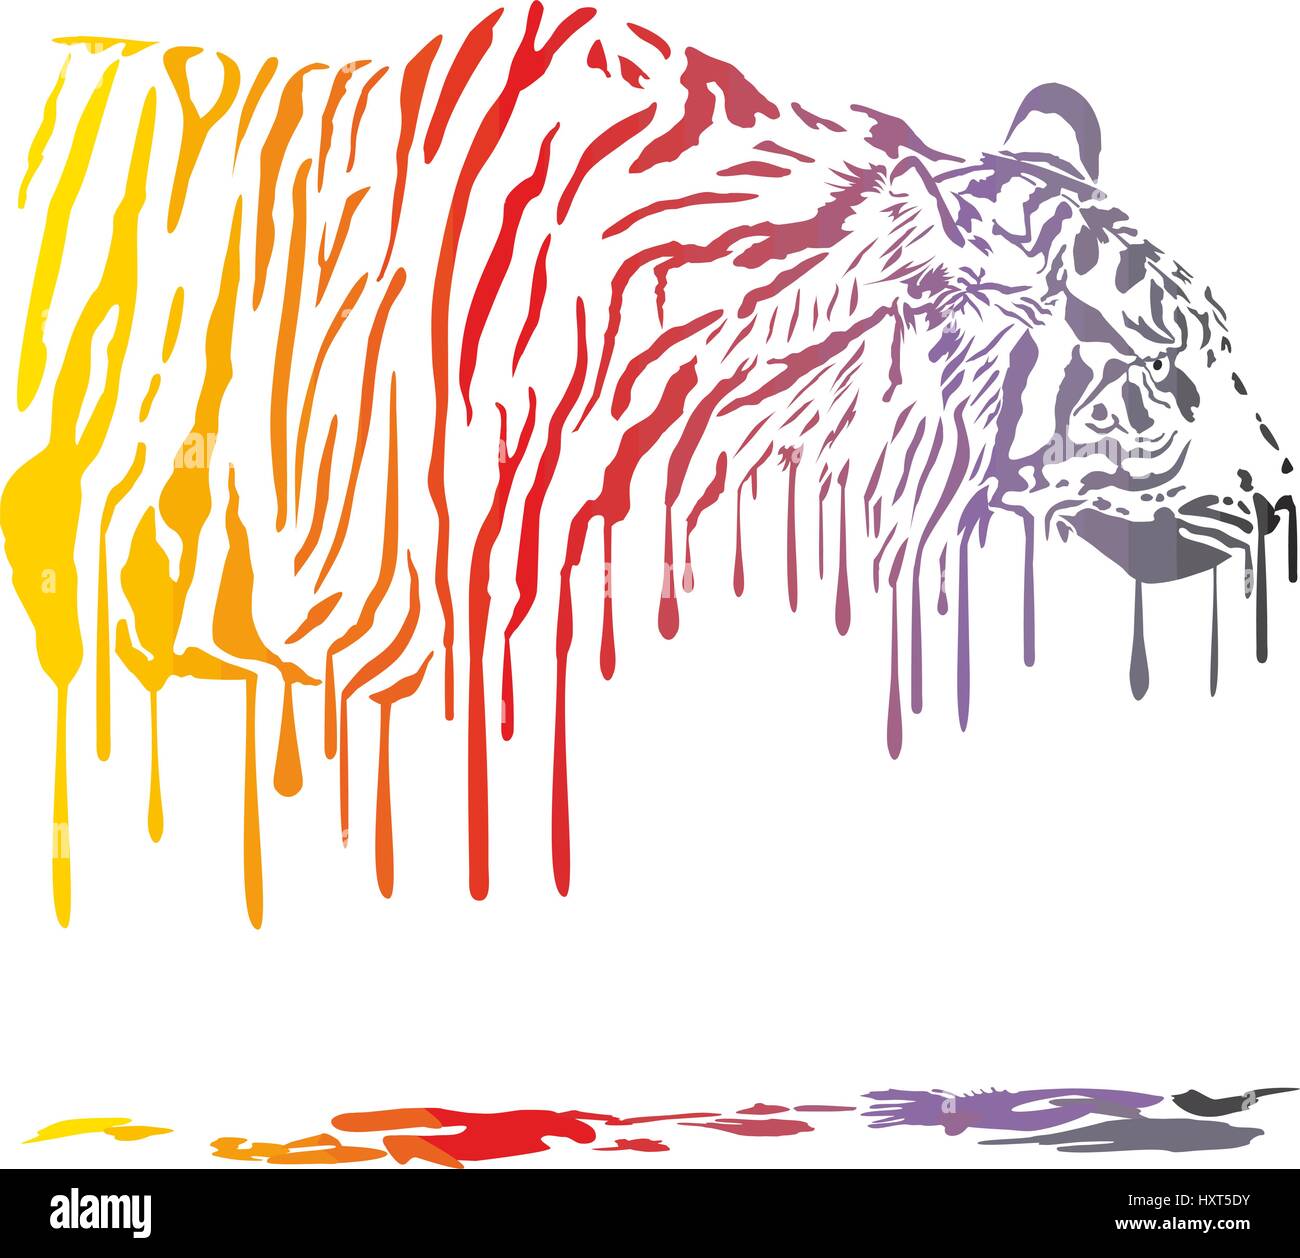 Tiger abstrakte Malerei Stock Vektor